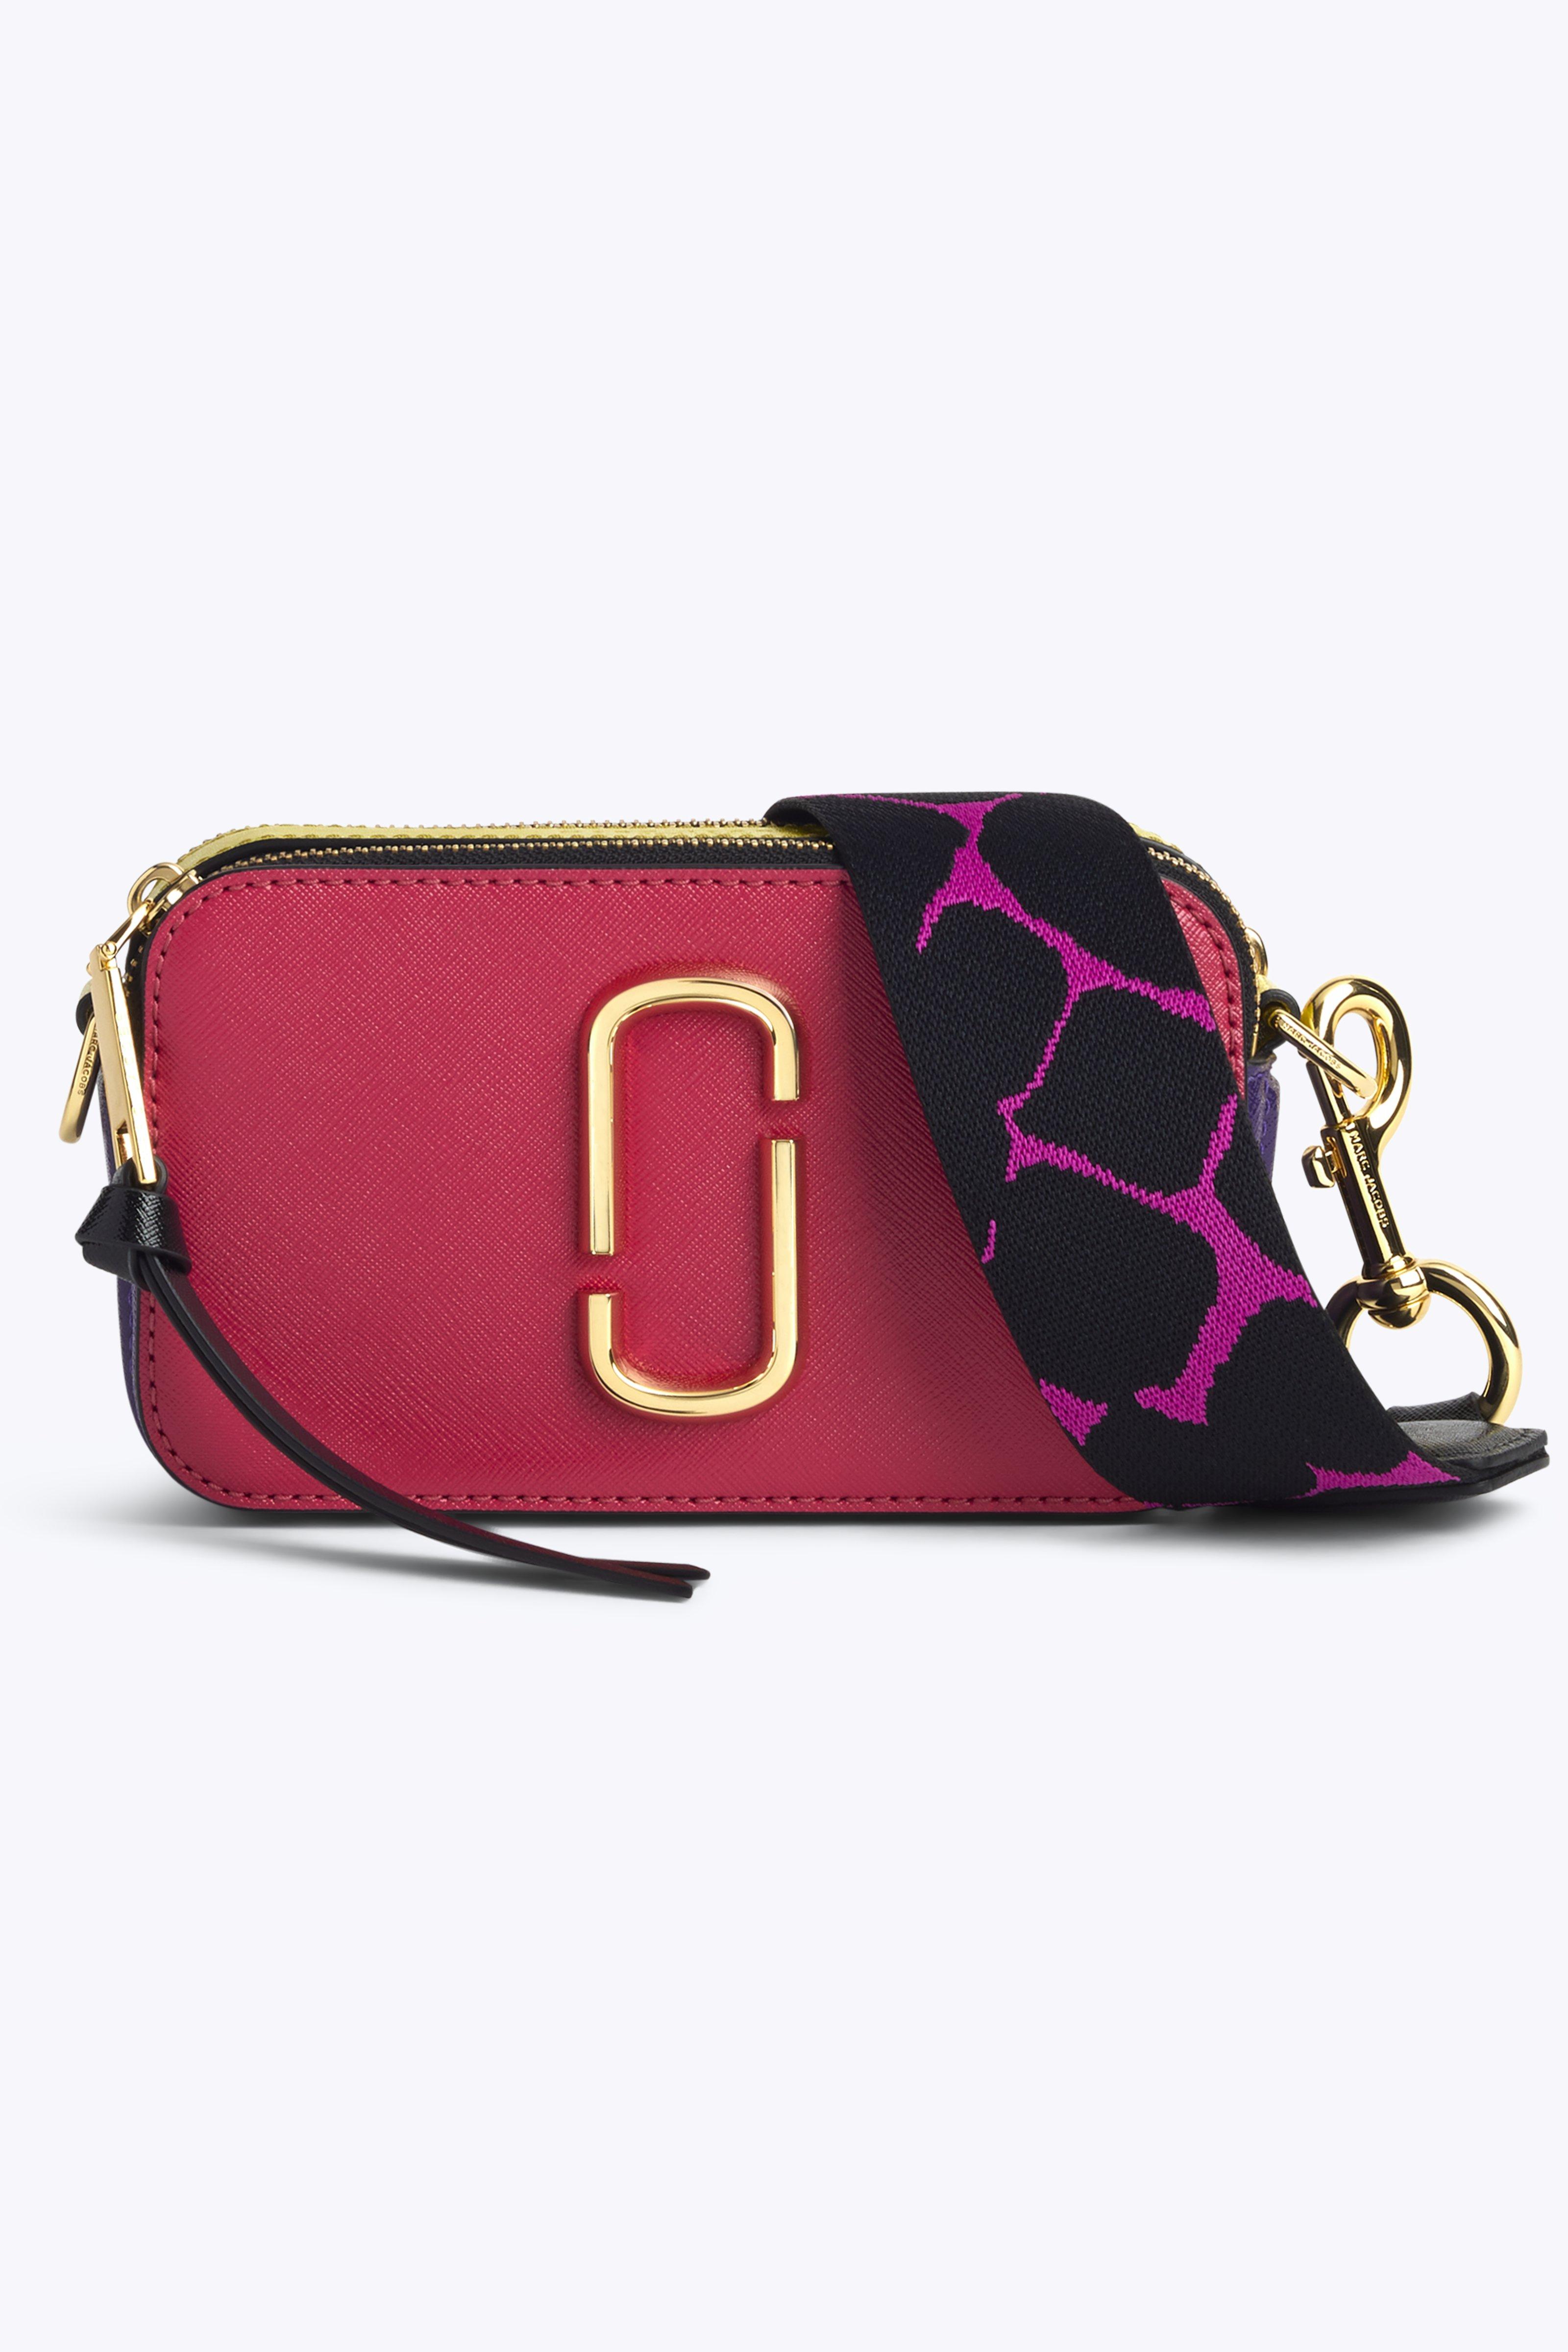 Snapshot bag. Pink/red/blue  Marc jacobs snapshot bag, Bags, Pink bag